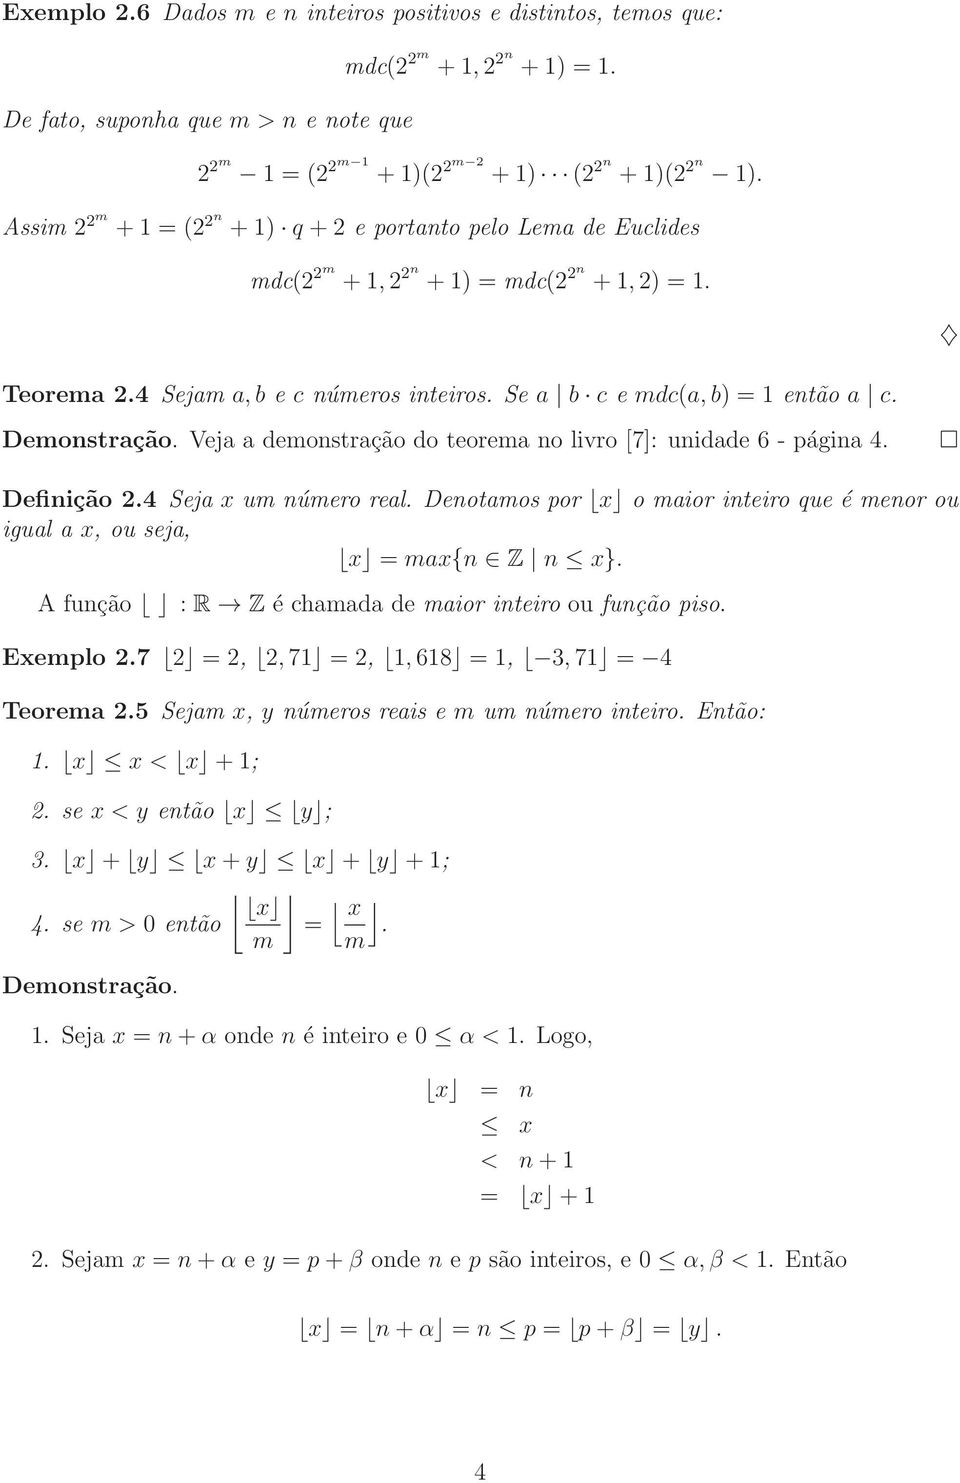 Veja a demonstração do teorema no livro [7]: unidade 6 - página 4. Definição 2.4 Seja x um número real. Denotamos por x o maior inteiro que é menor ou igual a x, ou seja, x = max{n Z n x}.